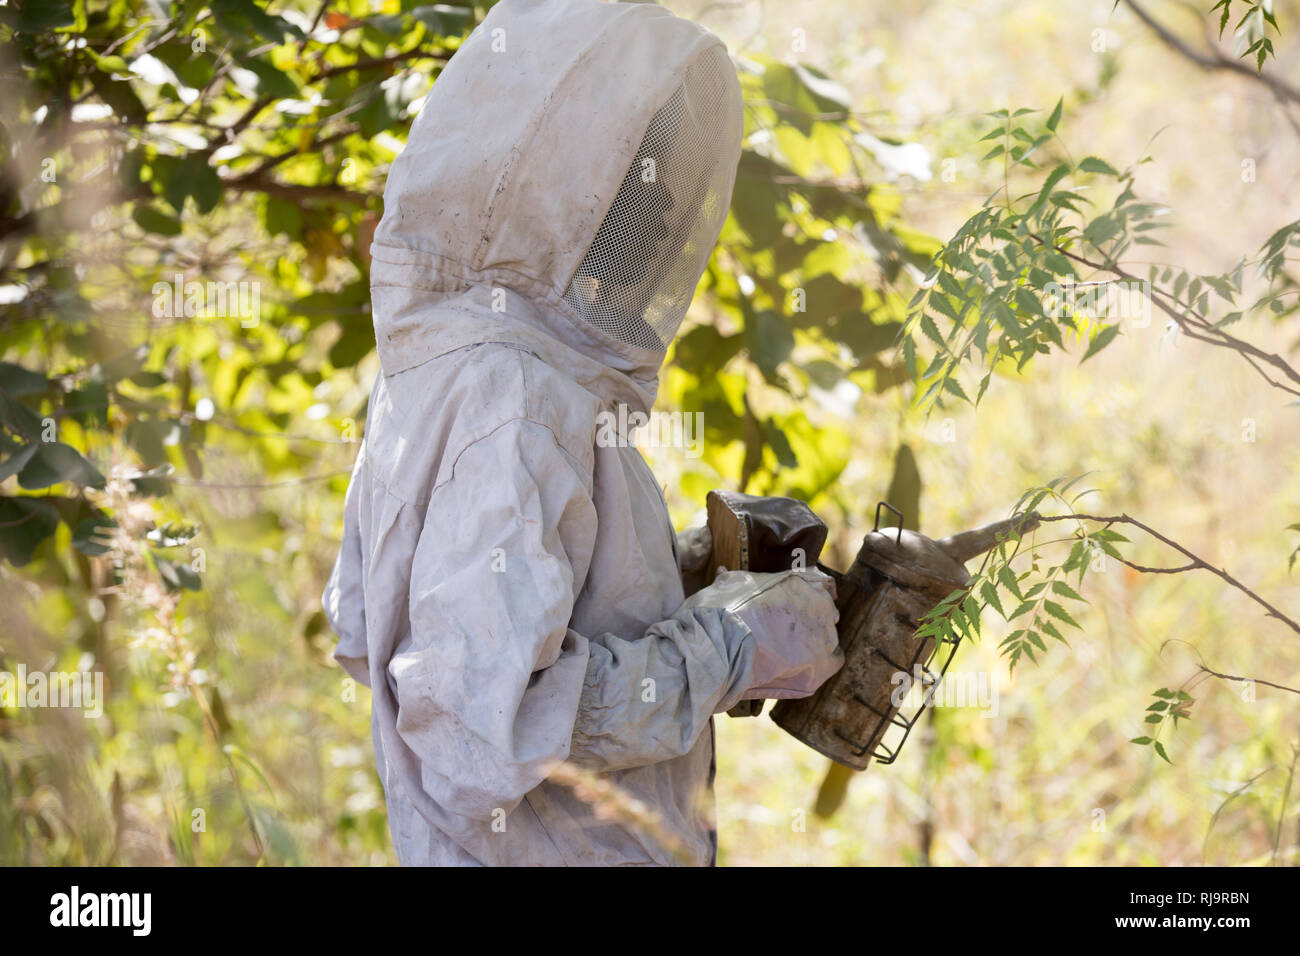 Bissiga Dorf, Yako, Burkina Faso, 29. November 2016; Mitglied der Wald Livlihood Projekt der Frauen, bereitet Honig aus einem der 10 Bienenstöcke in der Gruppe zu sammeln. Stockfoto